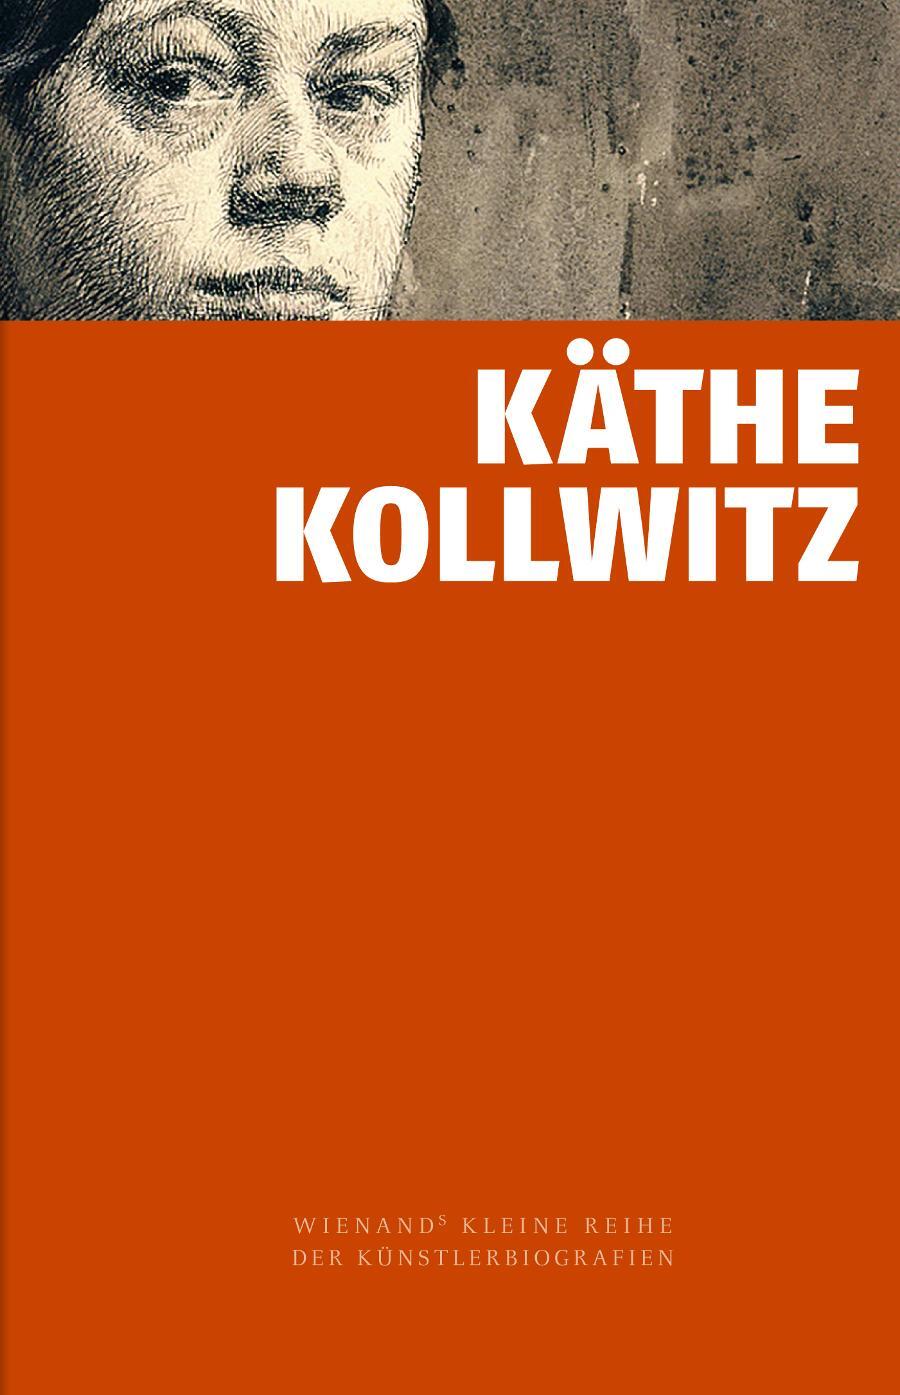 Käthe Kollwitz - Knesebeck, Alexandra von dem